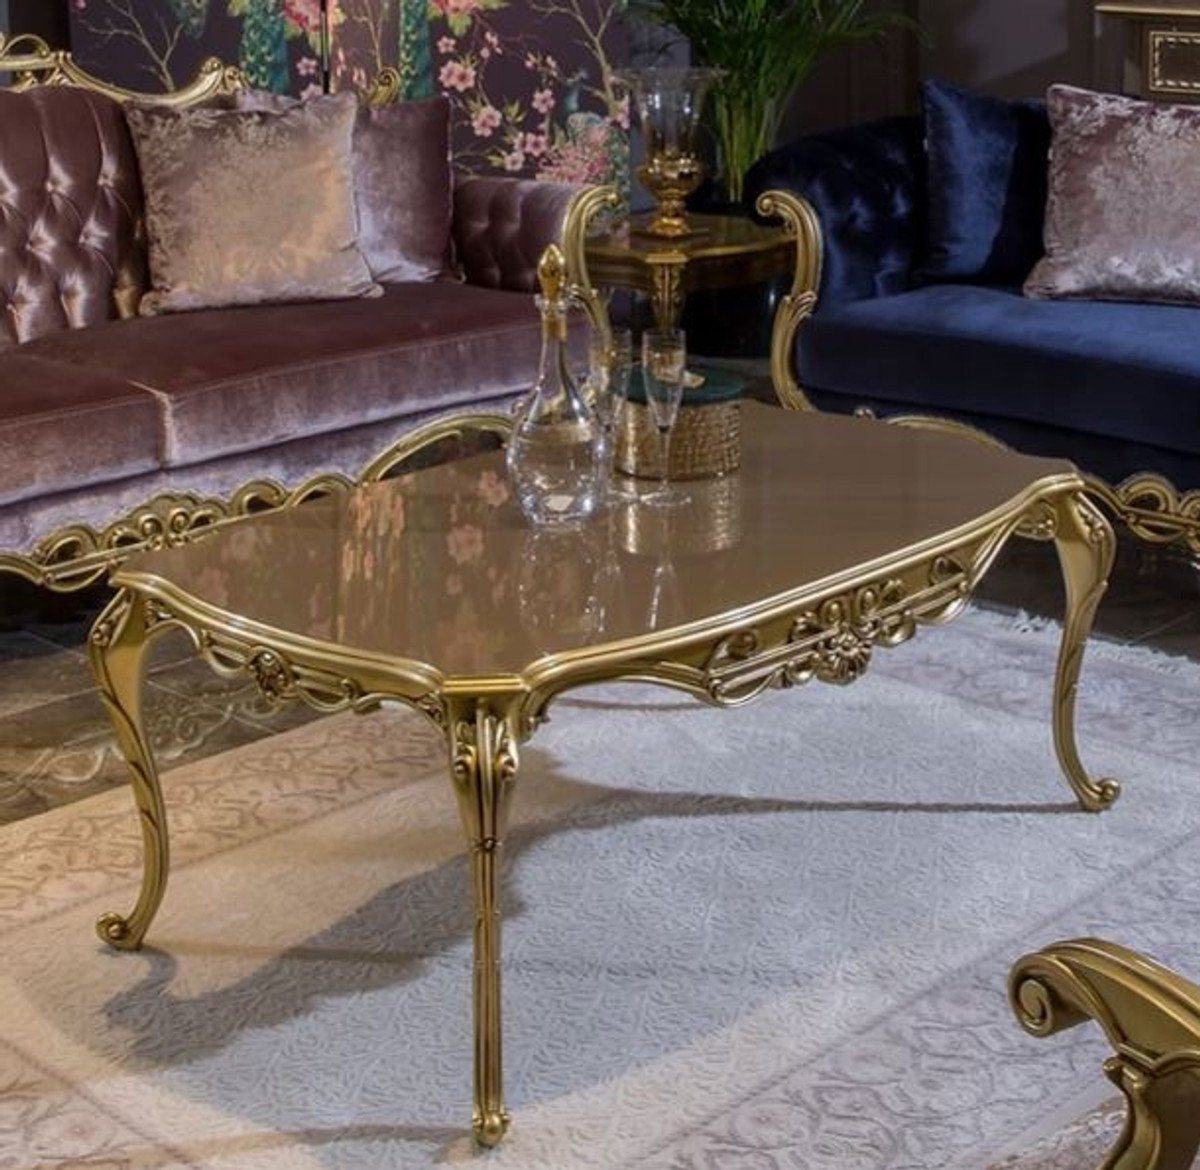 Casa Padrino Couchtisch Luxus Barock Couchtisch Grau / Gold 123 x 77 x H. 52 cm - Edler Massivholz Wohnzimmertisch im Barockstil - Prunkvolle Barock Möbel | Couchtische